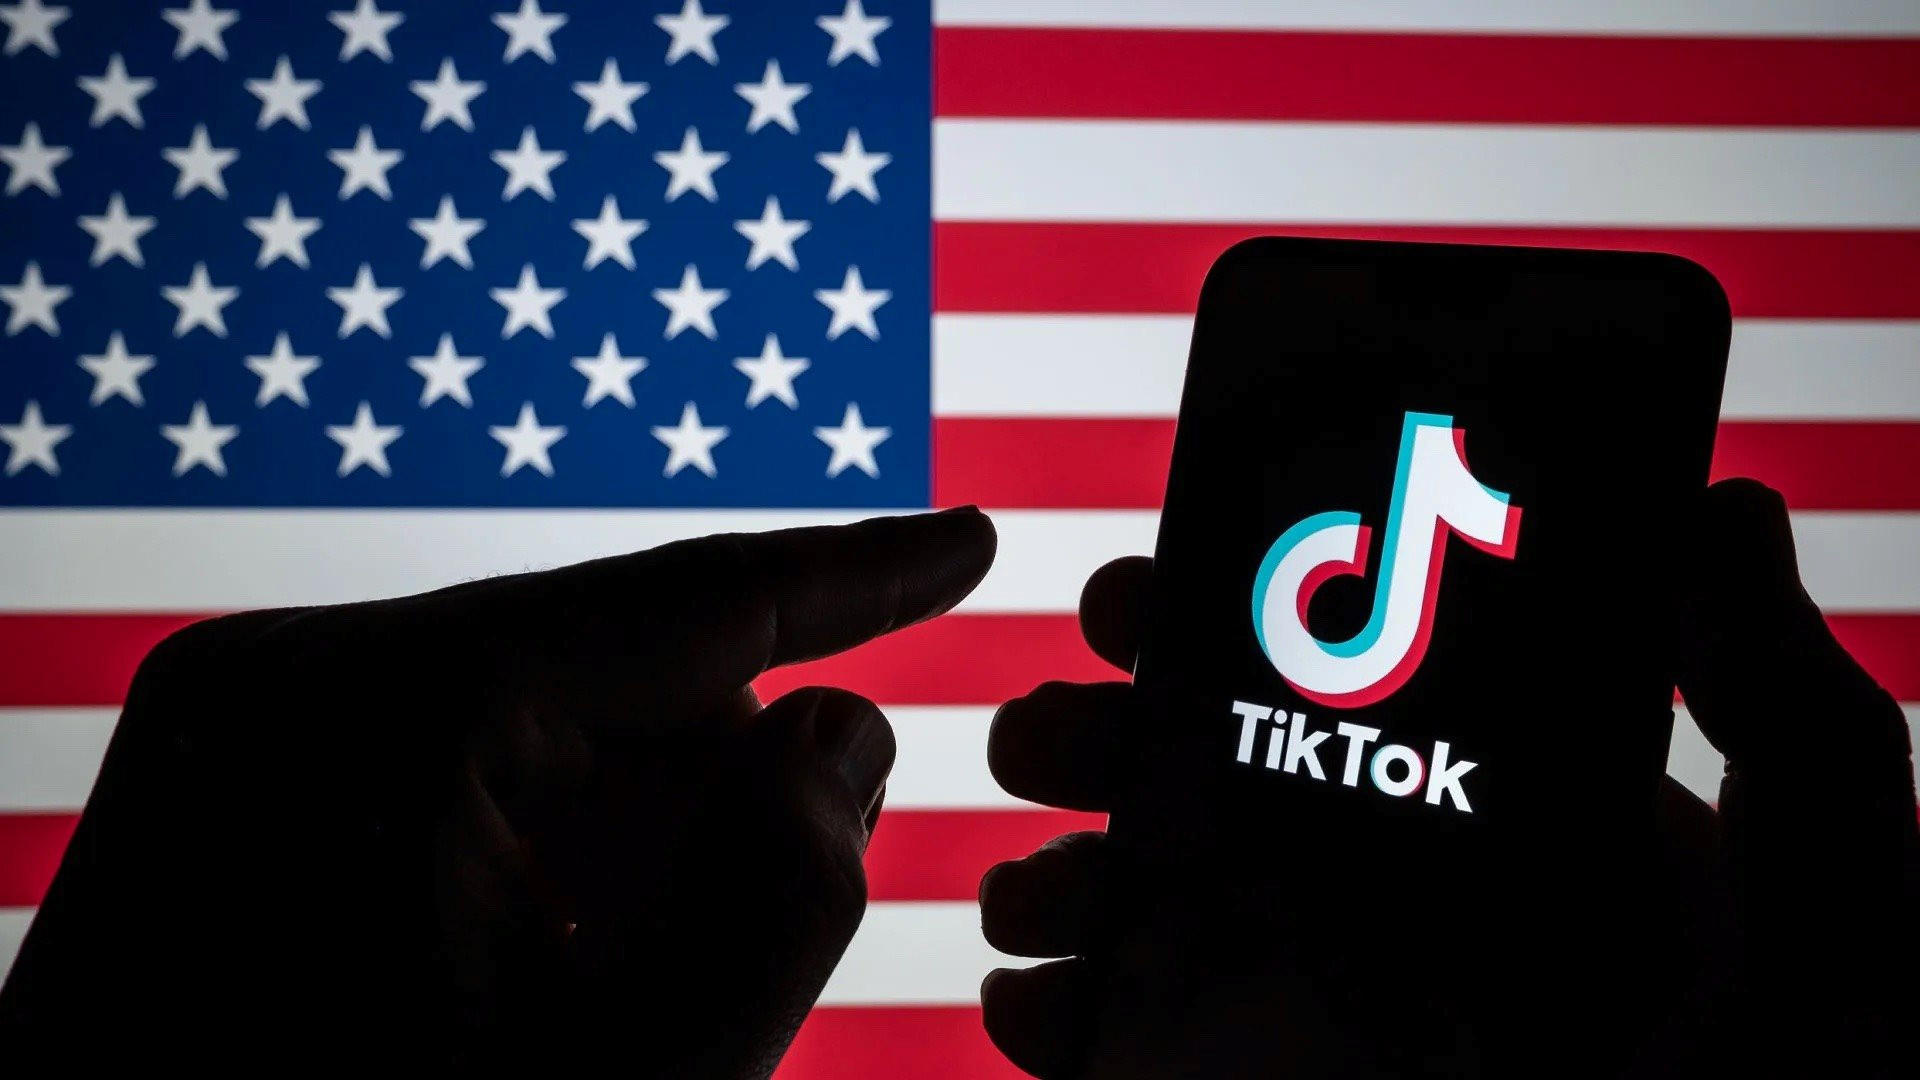 TikTok thà bị cấm hoàn toàn ở Mỹ hơn là bán lại cho công ty khác